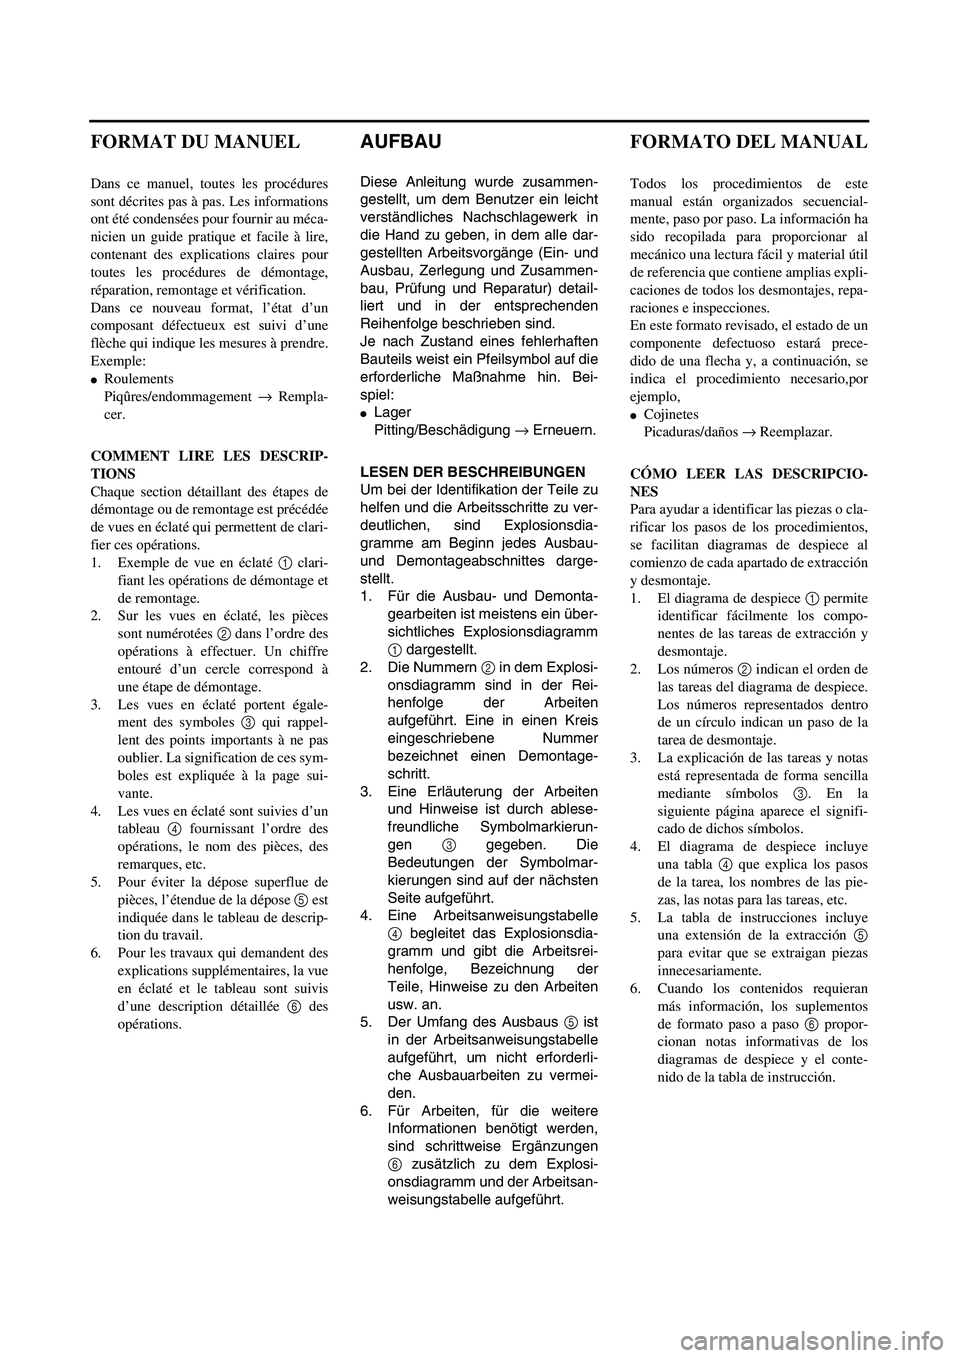 YAMAHA WR 400F 2002  Notices Demploi (in French)  
AUFBAU 
Diese Anleitung wurde zusammen-
gestellt, um dem Benutzer ein leicht
verständliches Nachschlagewerk in
die Hand zu geben, in dem alle dar-
gestellten Arbeitsvorgänge (Ein- und
Ausbau, Zerl